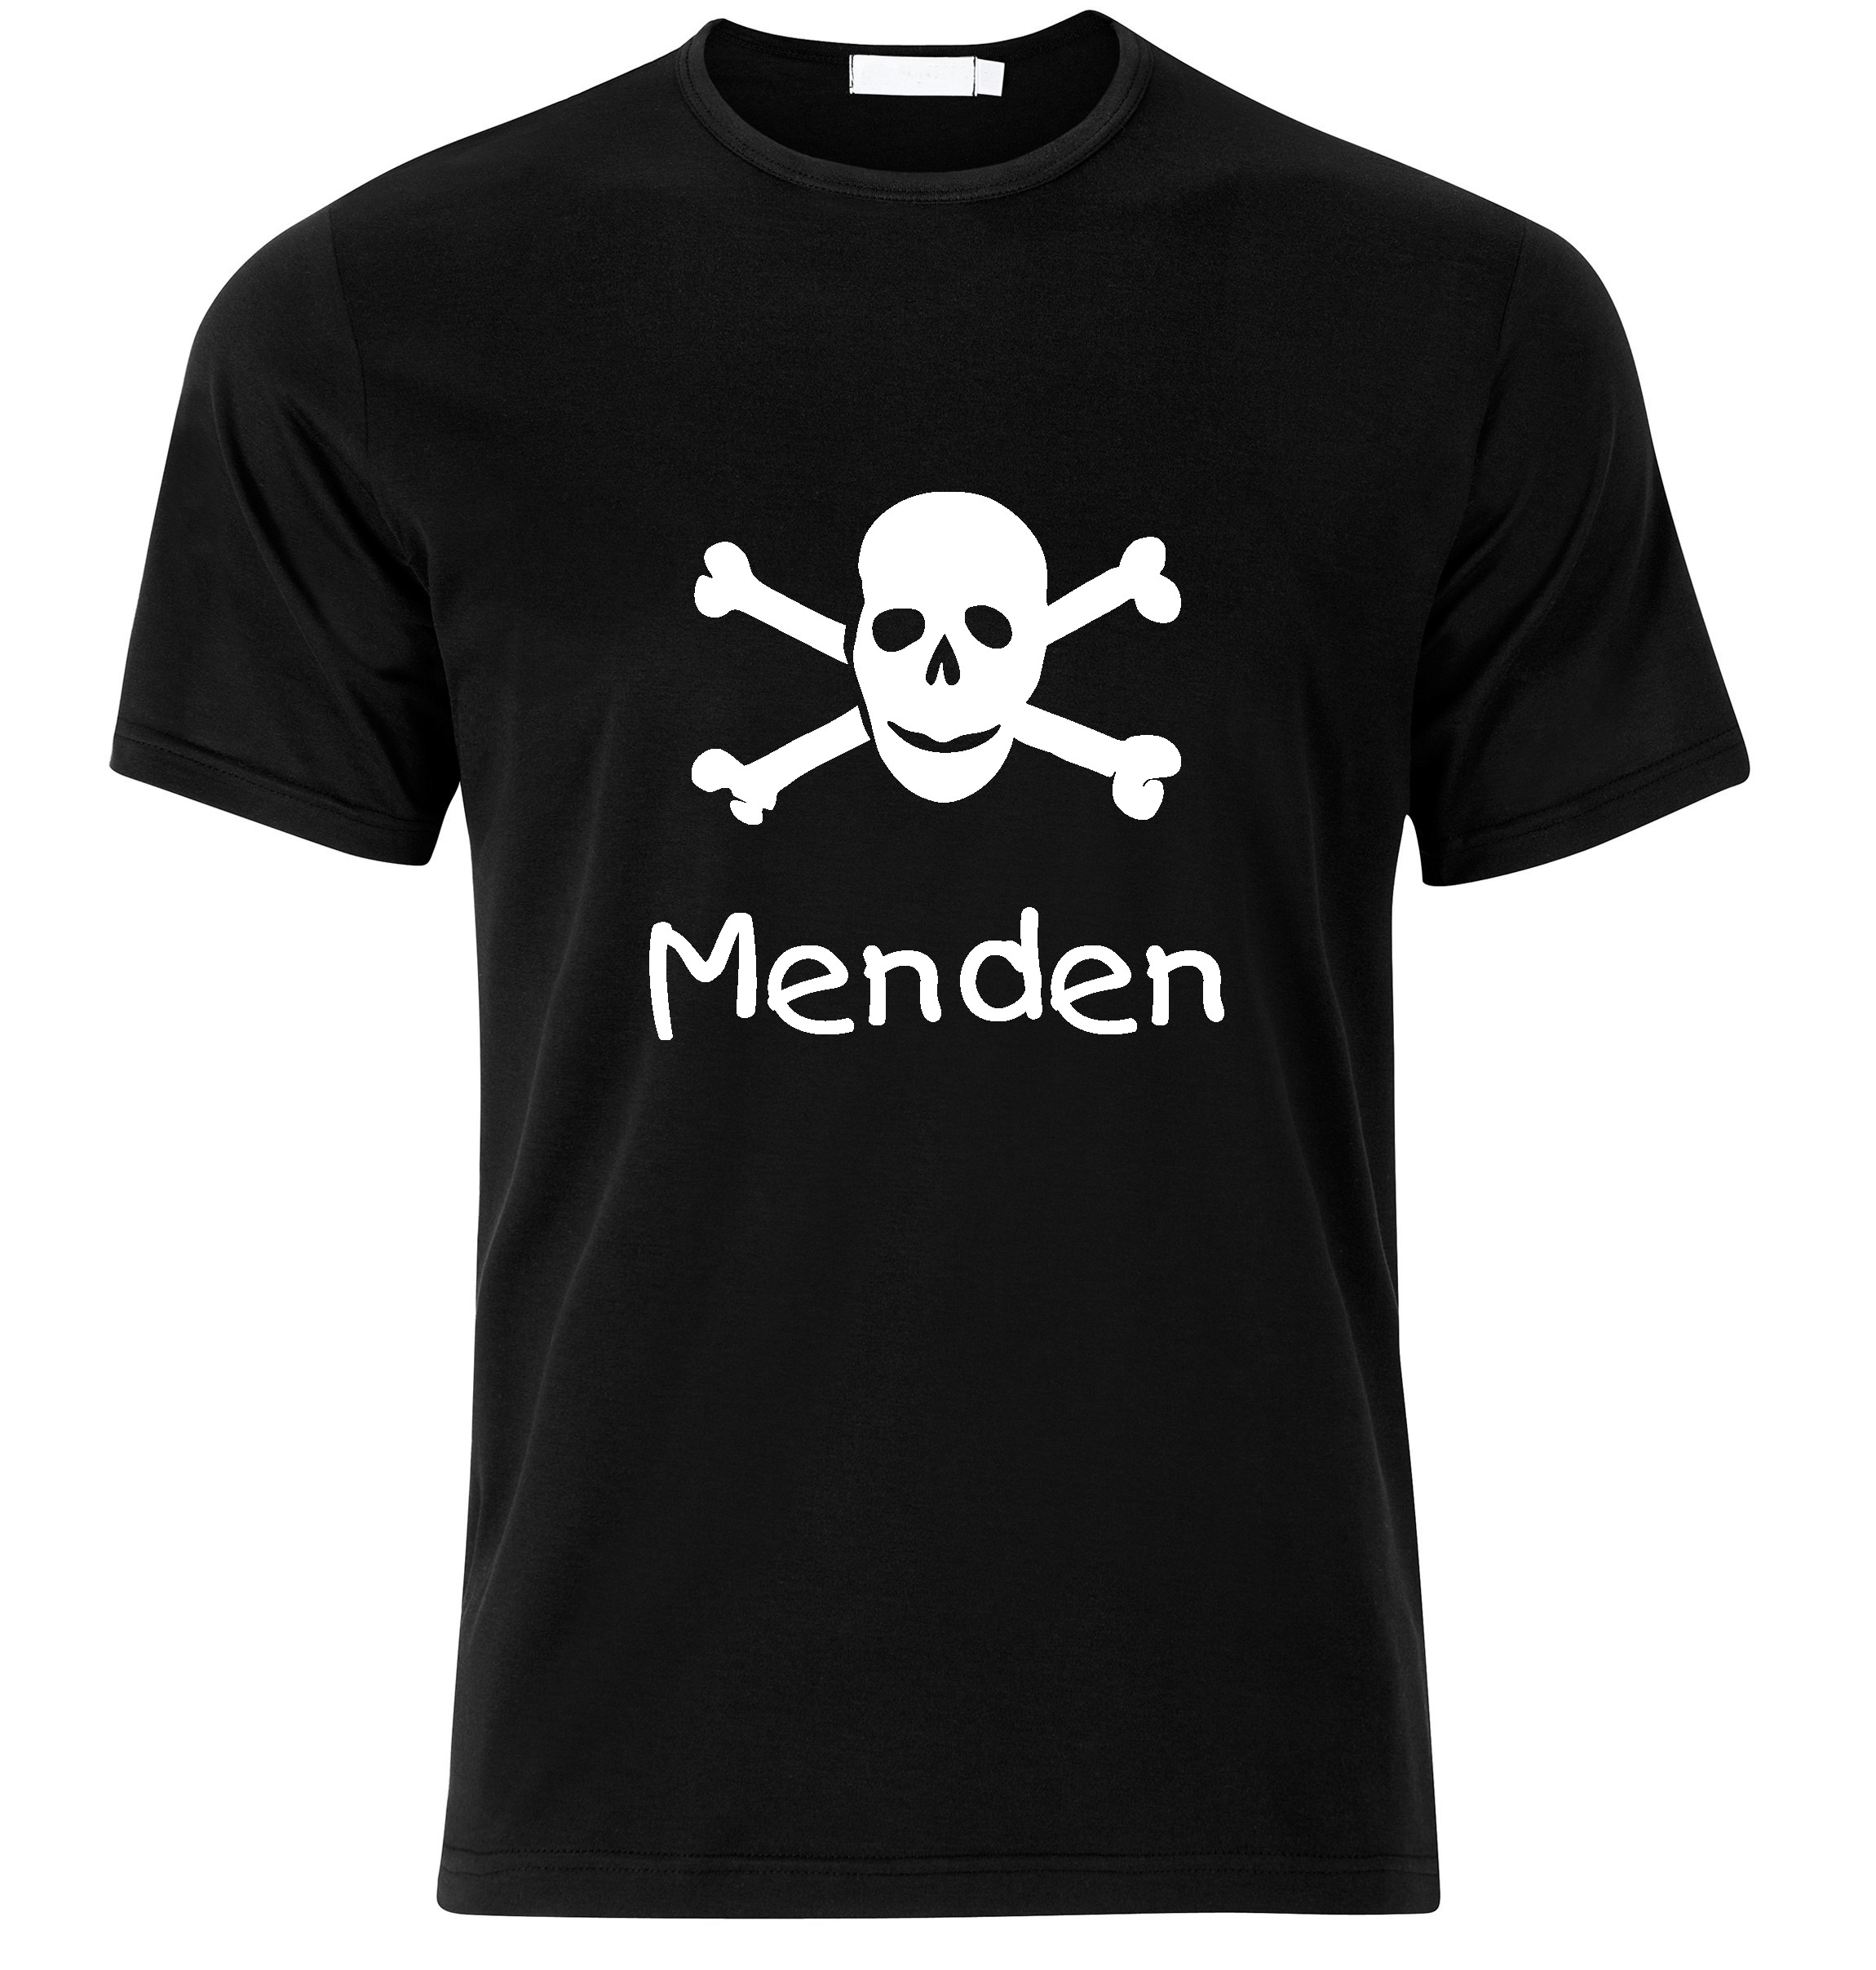 T-Shirt Menden Jolly Roger, Totenkopf